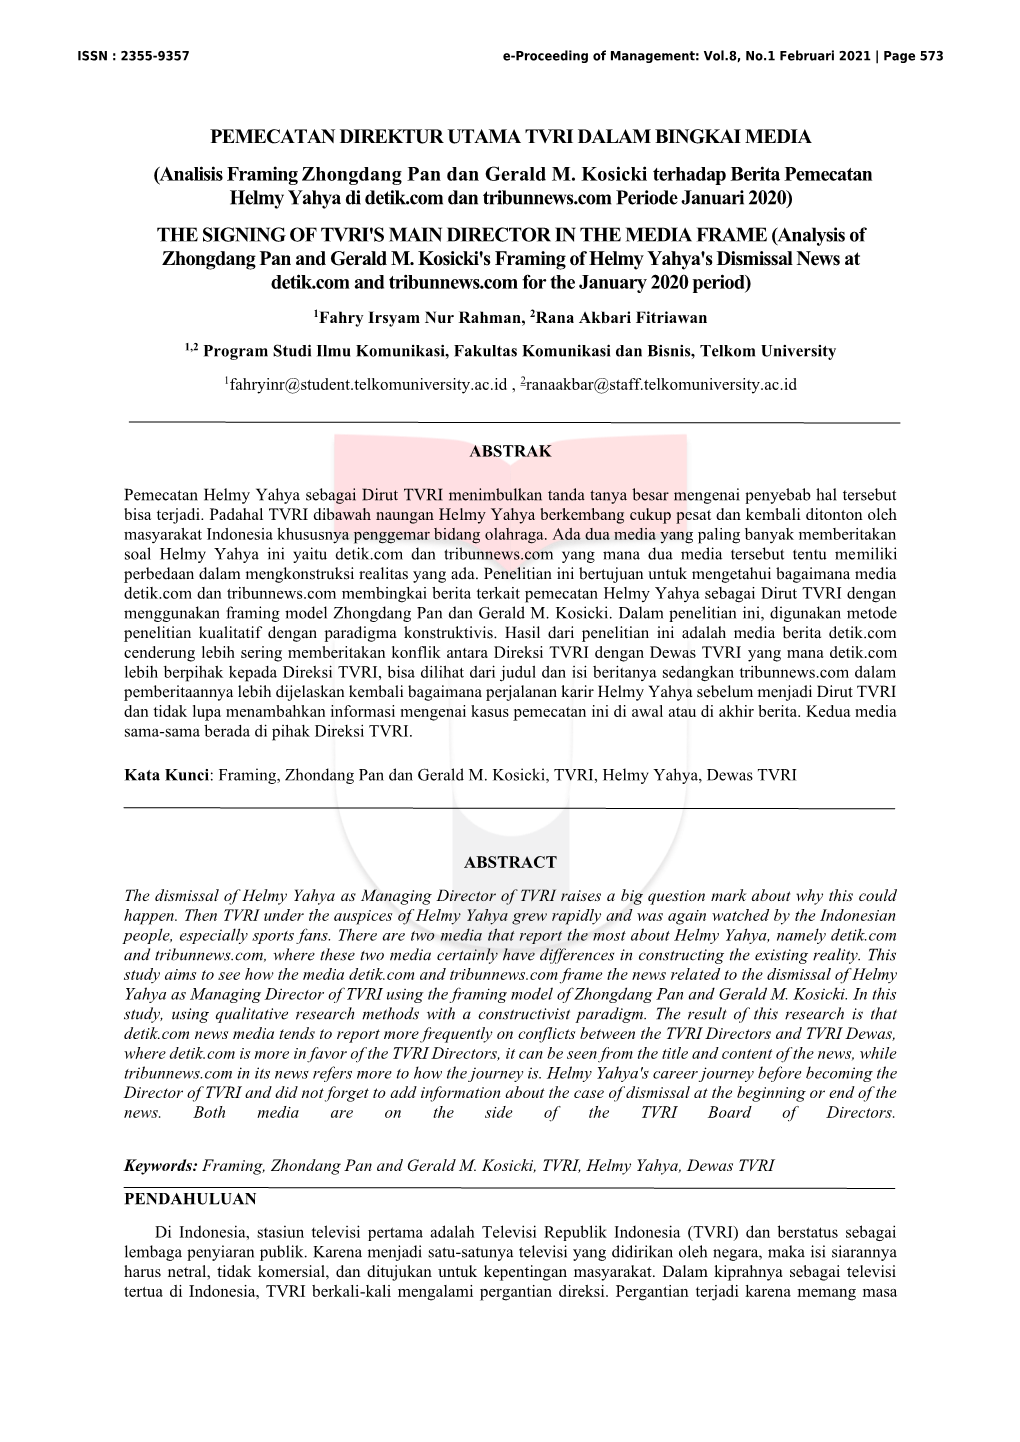 Analisis Framing Zhongdang Pan Dan Gerald M. Kosicki Terhadap Berita